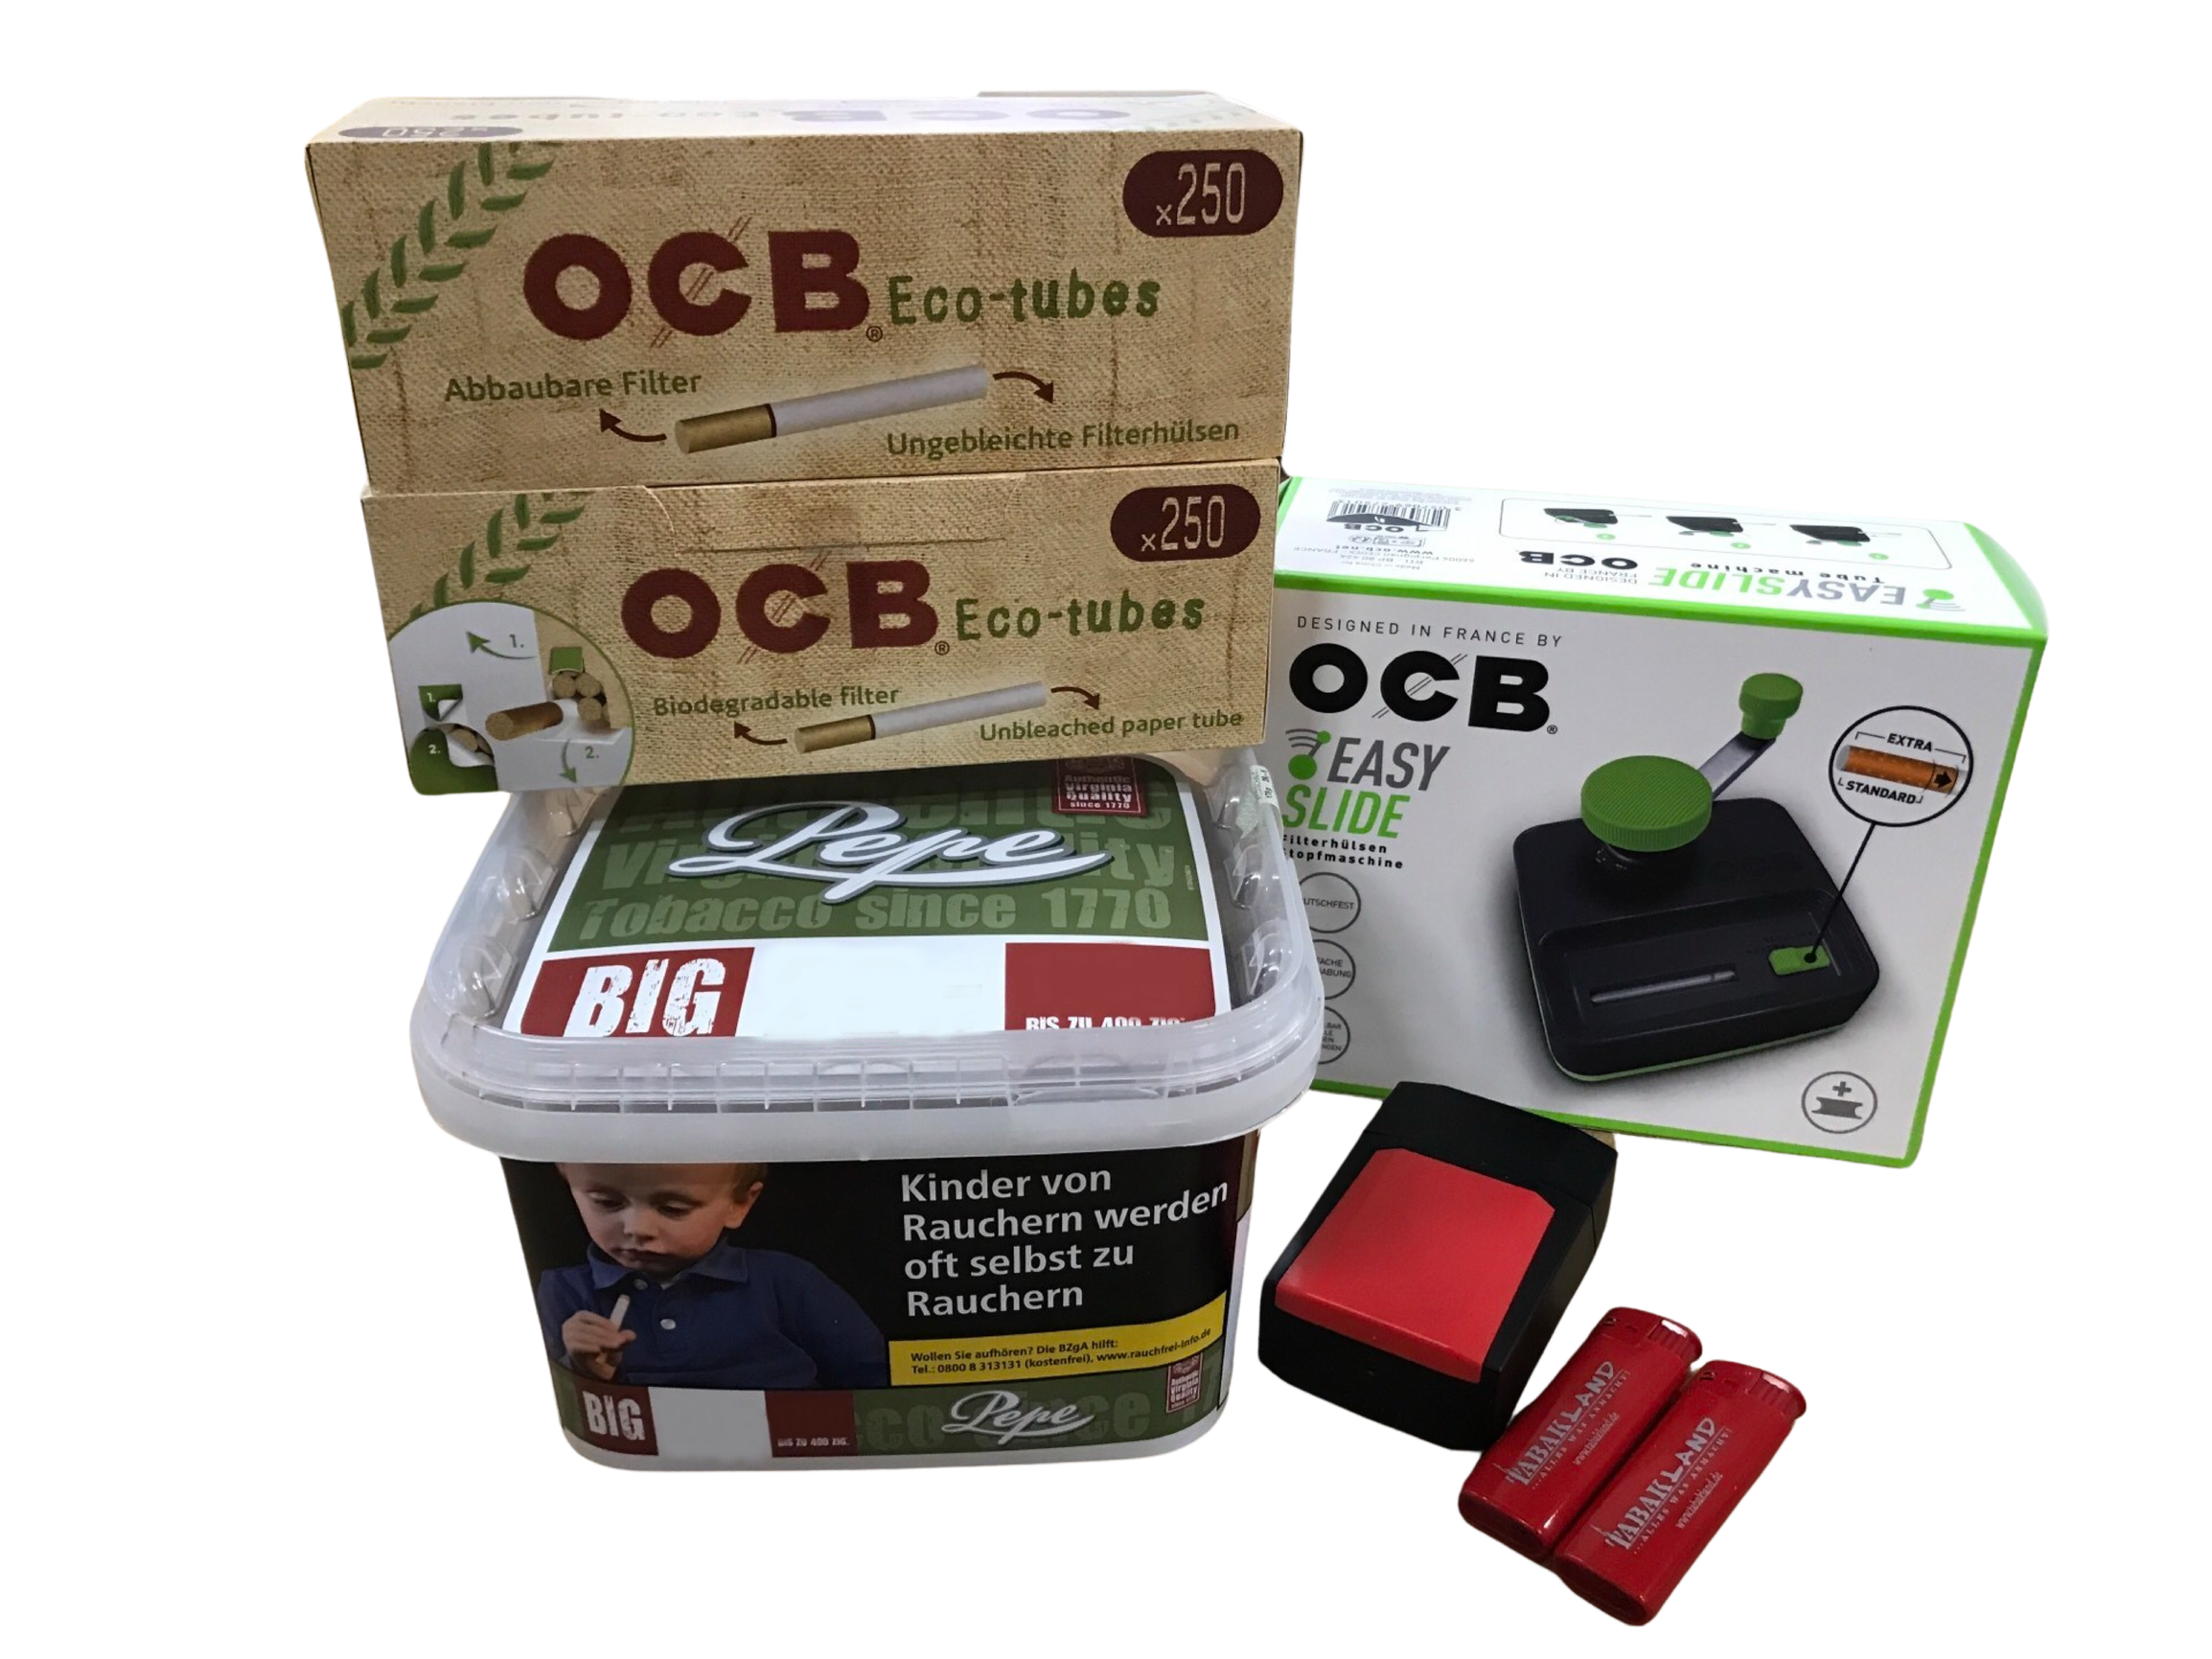 PEPE Rich Green 170g Eimer + 500 OCB Organic Hülsen + OCB Easy Slide Big + Etui inkl. 2 Feuerzeuge